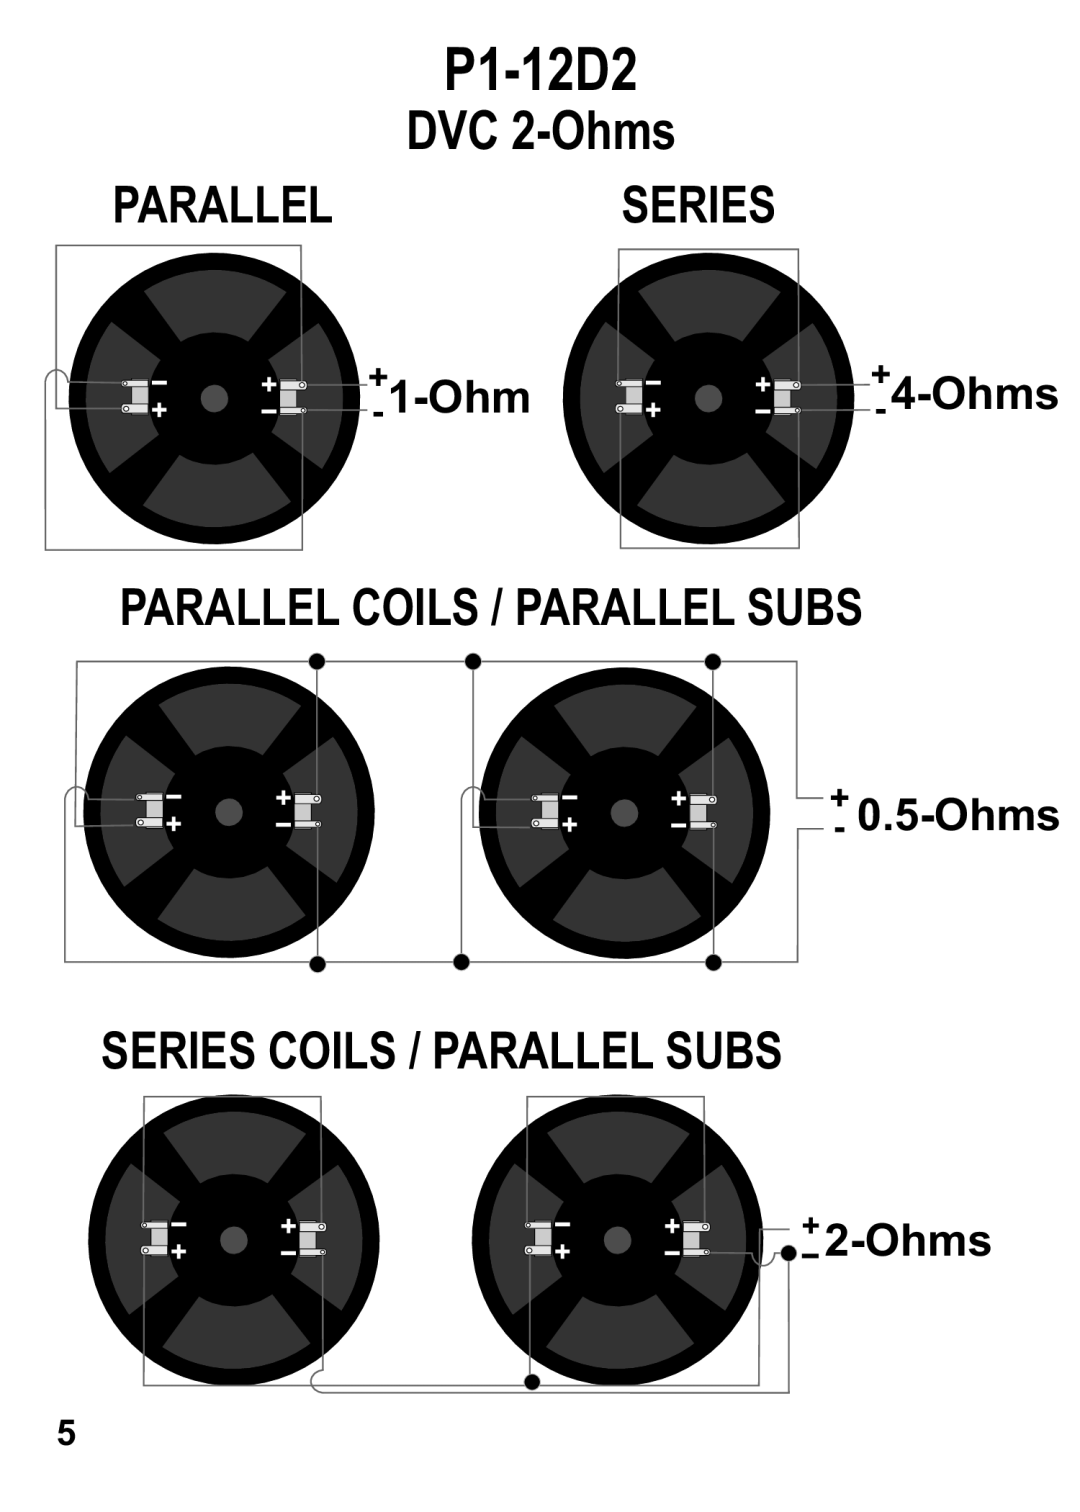 Maxxsonics P1-12D2 manual DVC 2-Ohms, Parallelseries, Parallel Coils / Parallel Subs, Series Coils / Parallel Subs, 1-Ohm 